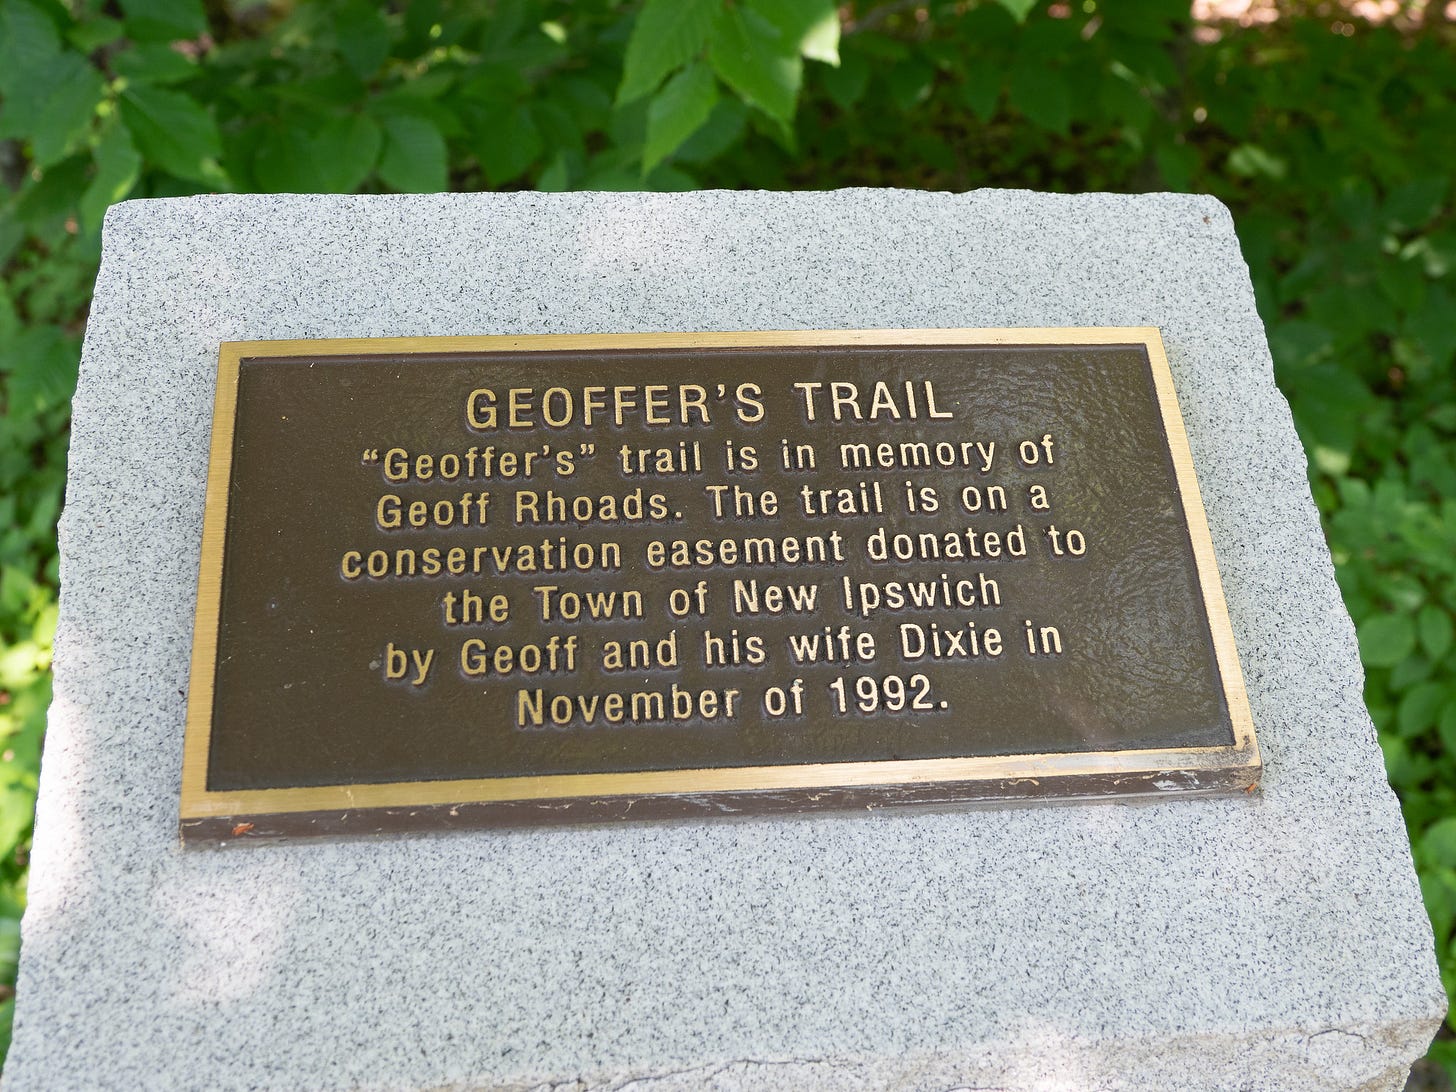 Geoffer's Trail